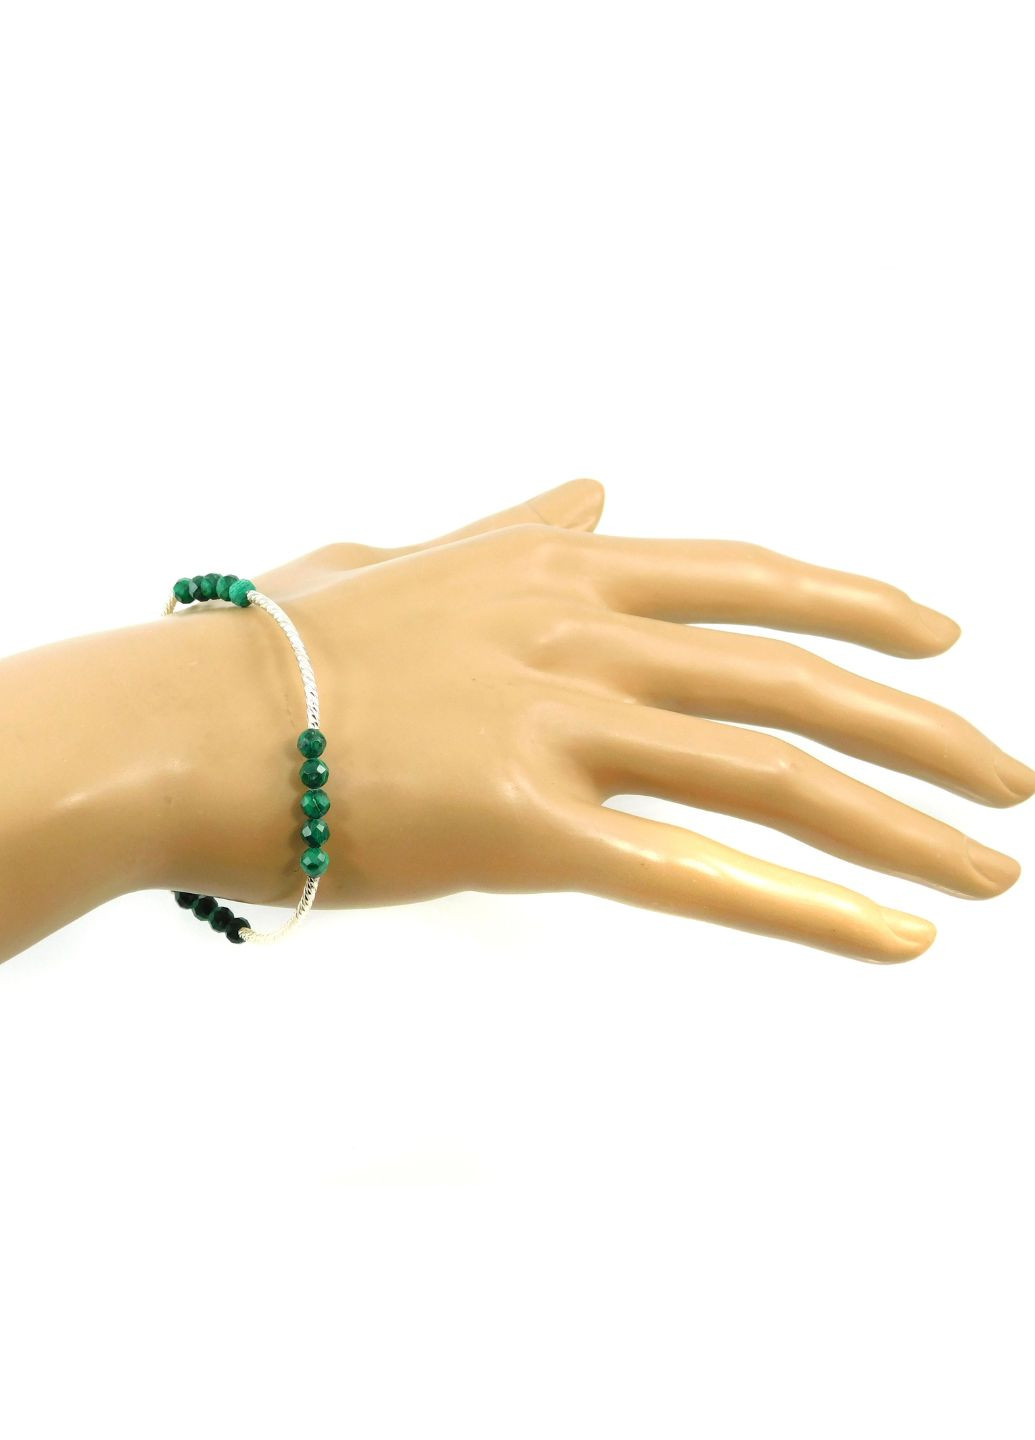 Эксклюзивный браслет "Женский стиль" Малахит грань, серебряная застежка, 17 размер Fursa fashion браслет (253996577)